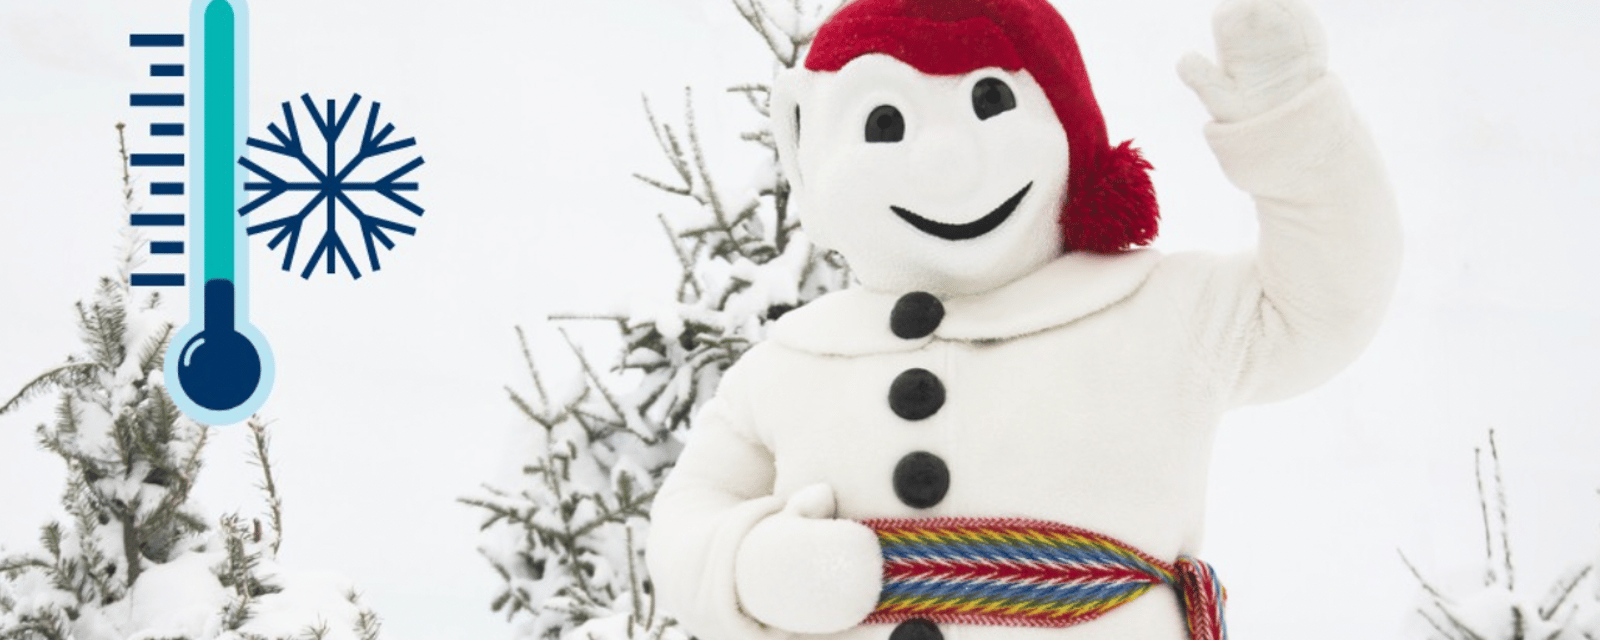 Le Carnaval Québec annule de nombreuses activités et repousse son ouverture en raison du froid glacial